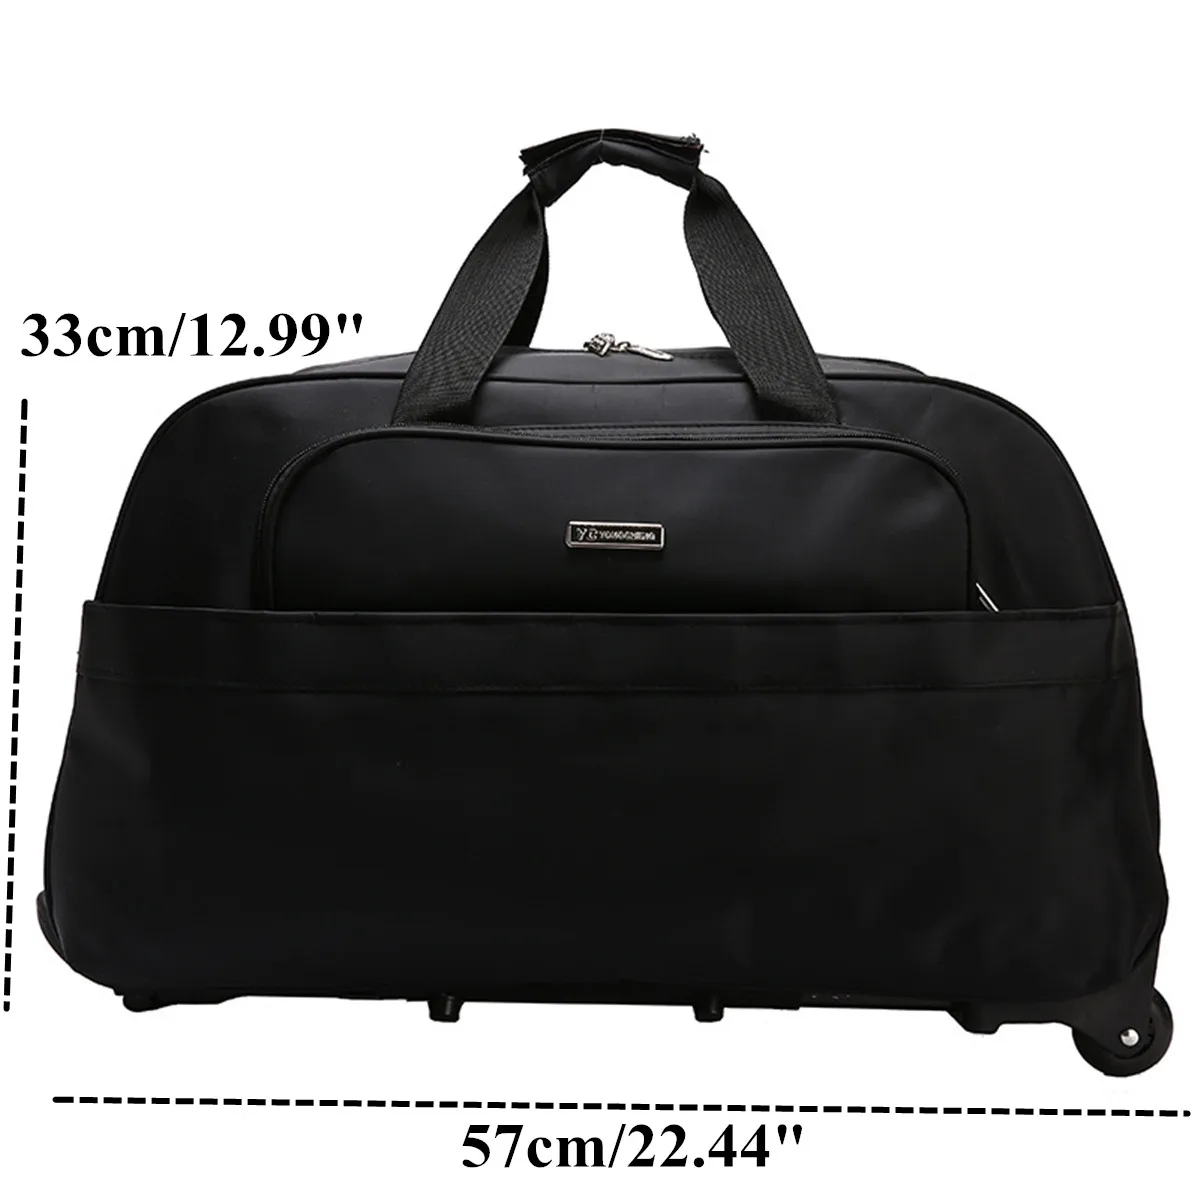 Новинка 2021, дорожная сумка-тележка для багажа с колесами, чемодан на колесиках, вместительные мужские сумки для путешествий, ручная сумка, 4 ... от AliExpress RU&CIS NEW